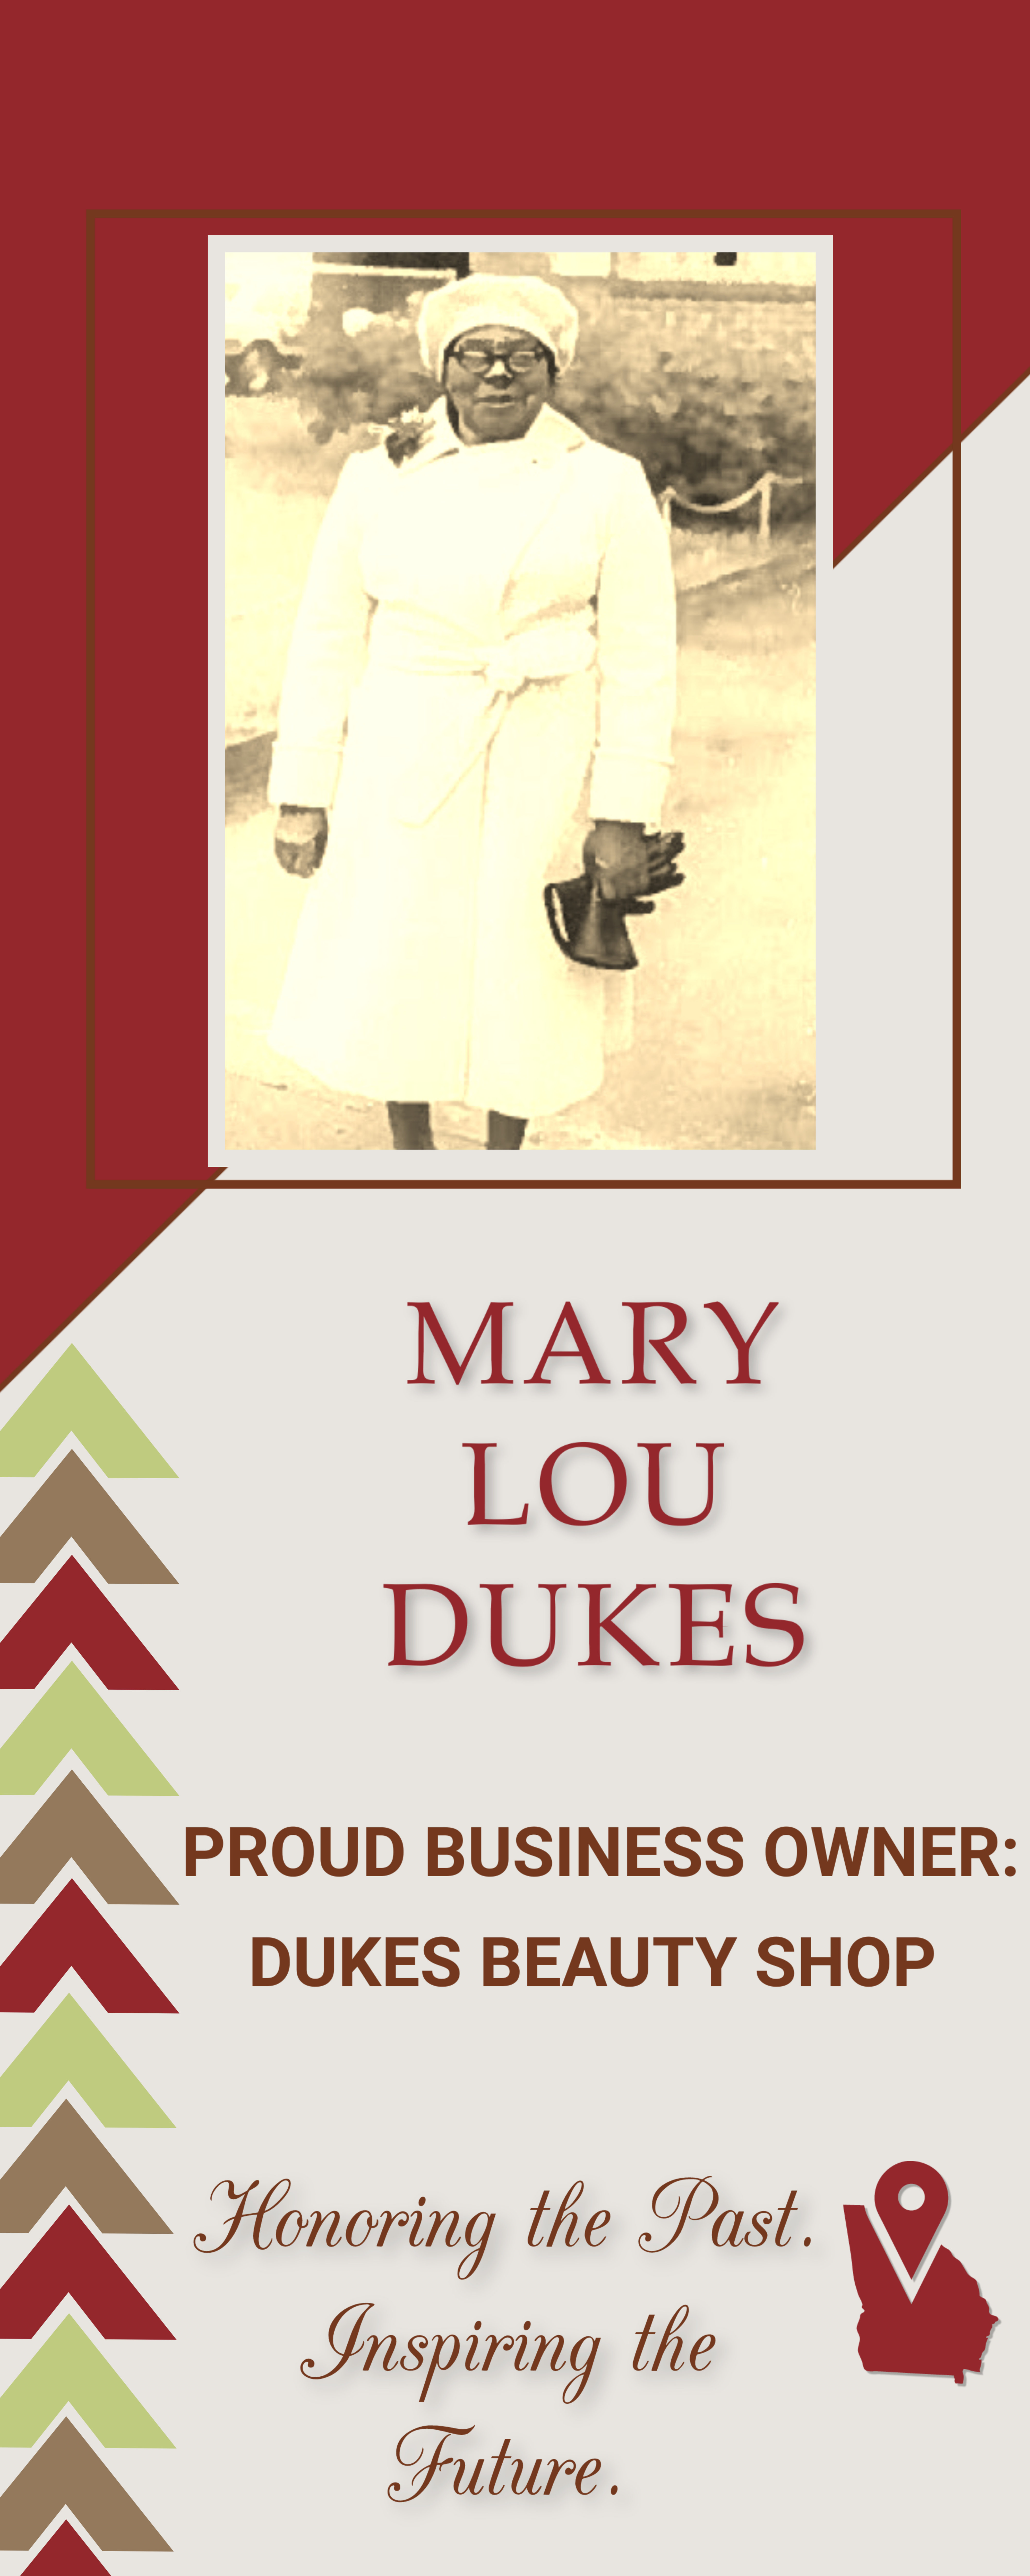 Mary Lour Dukes